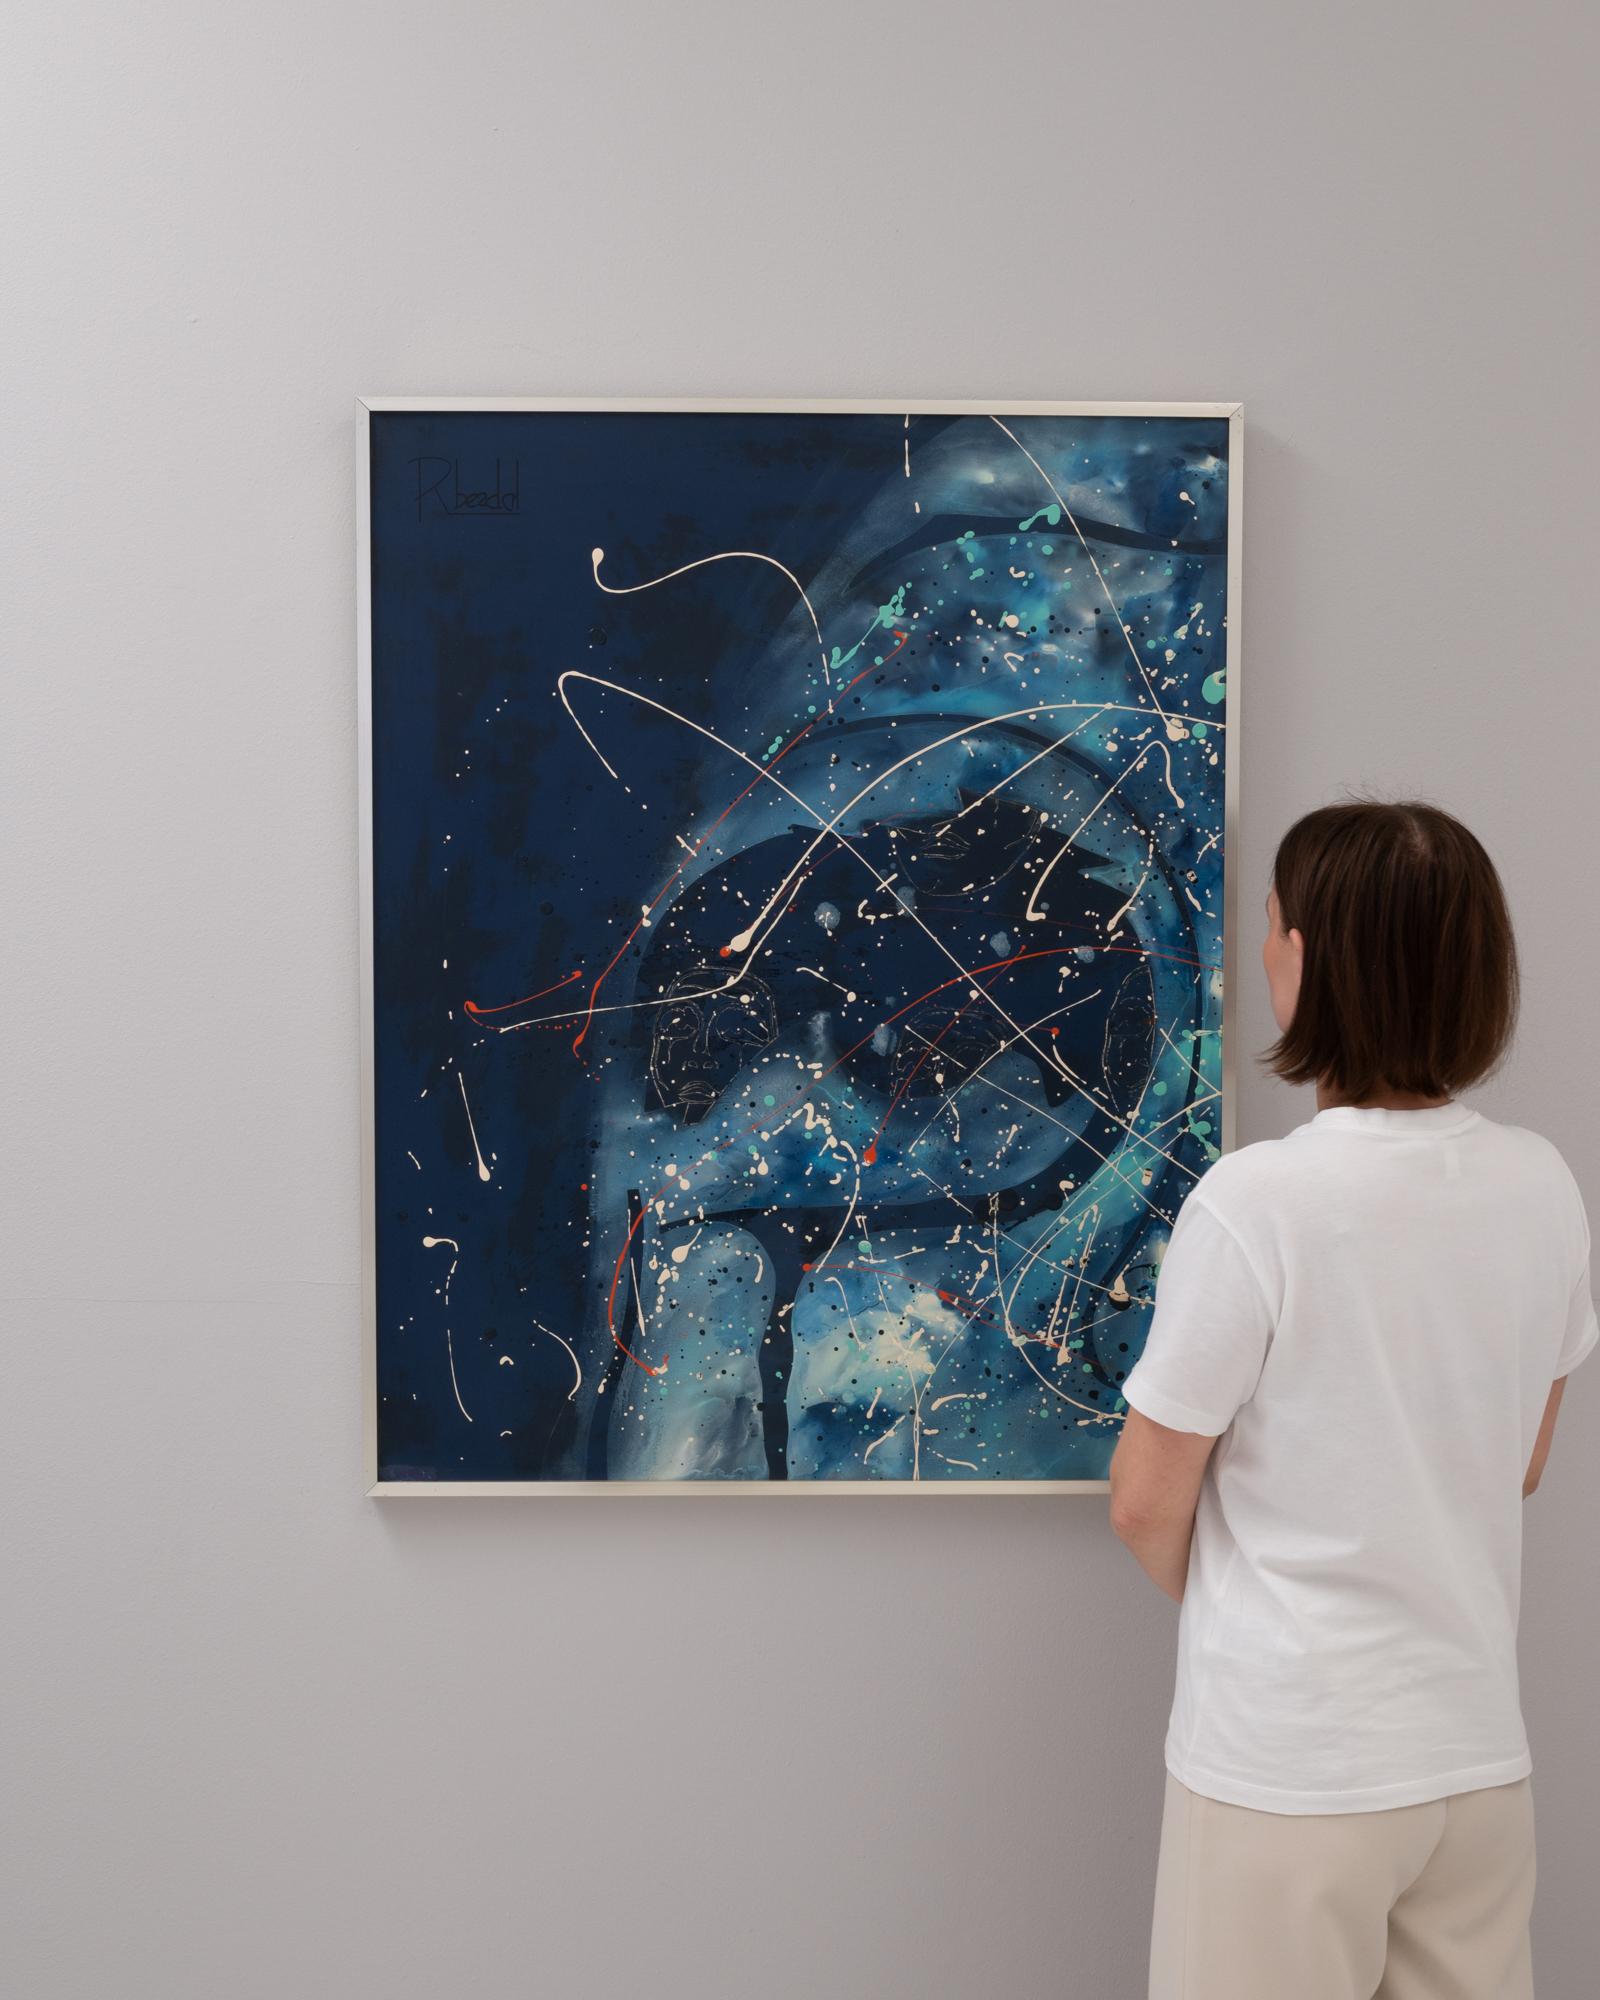 Plongez dans les profondeurs de l'abstraction avec cette captivante peinture belge du 20e siècle de René Berdal. Avec une étonnante gamme de bleus profonds qui évoquent l'étendue infinie des abysses océaniques, entrelacés avec des lignes dynamiques